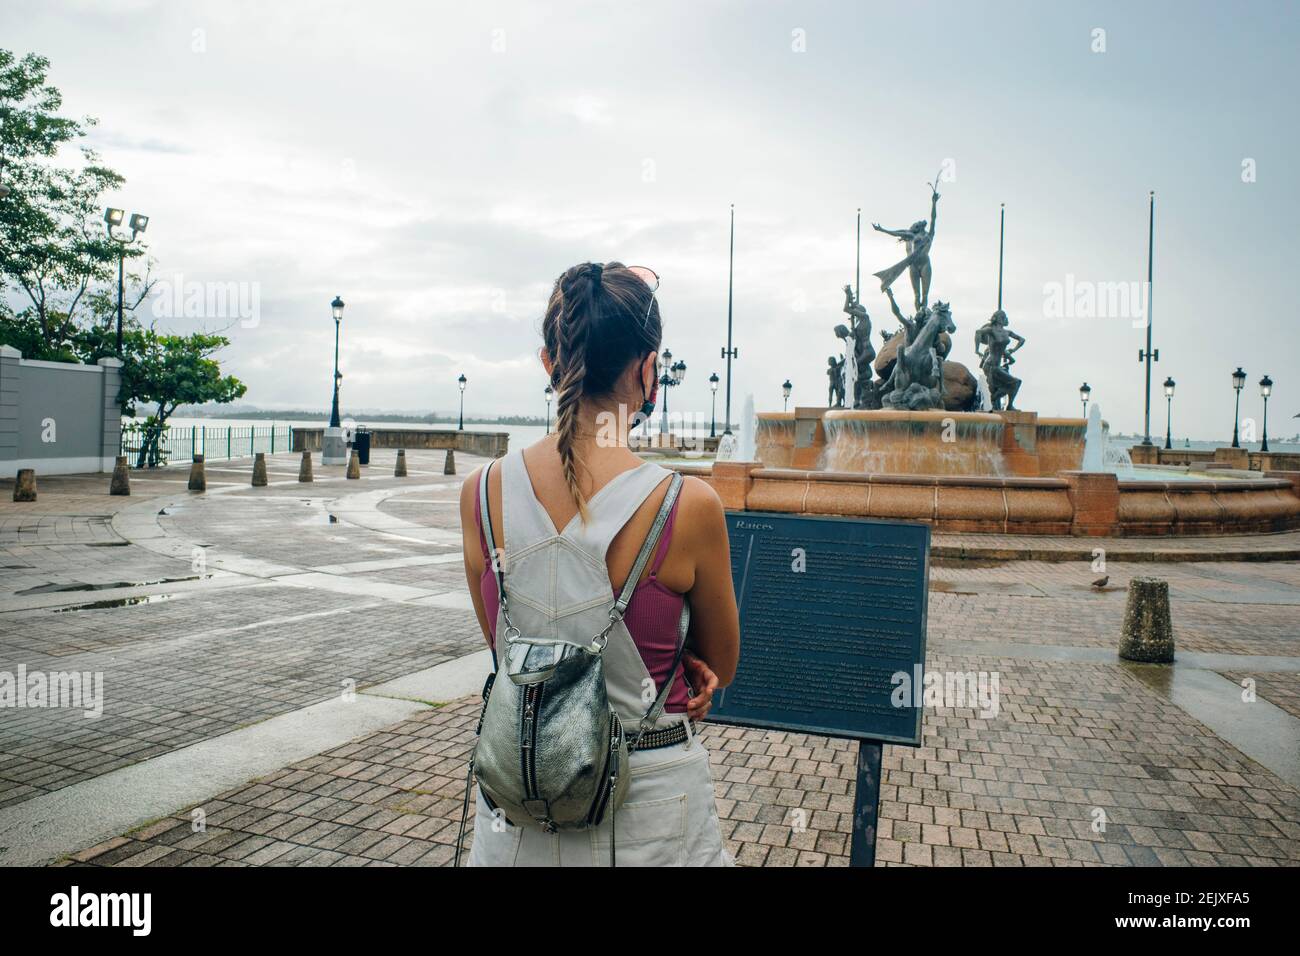 La statue historique de la fontaine Paseo de la Princesa située dans le vieux San Juan Puerto Rico - fev, 2021 Banque D'Images